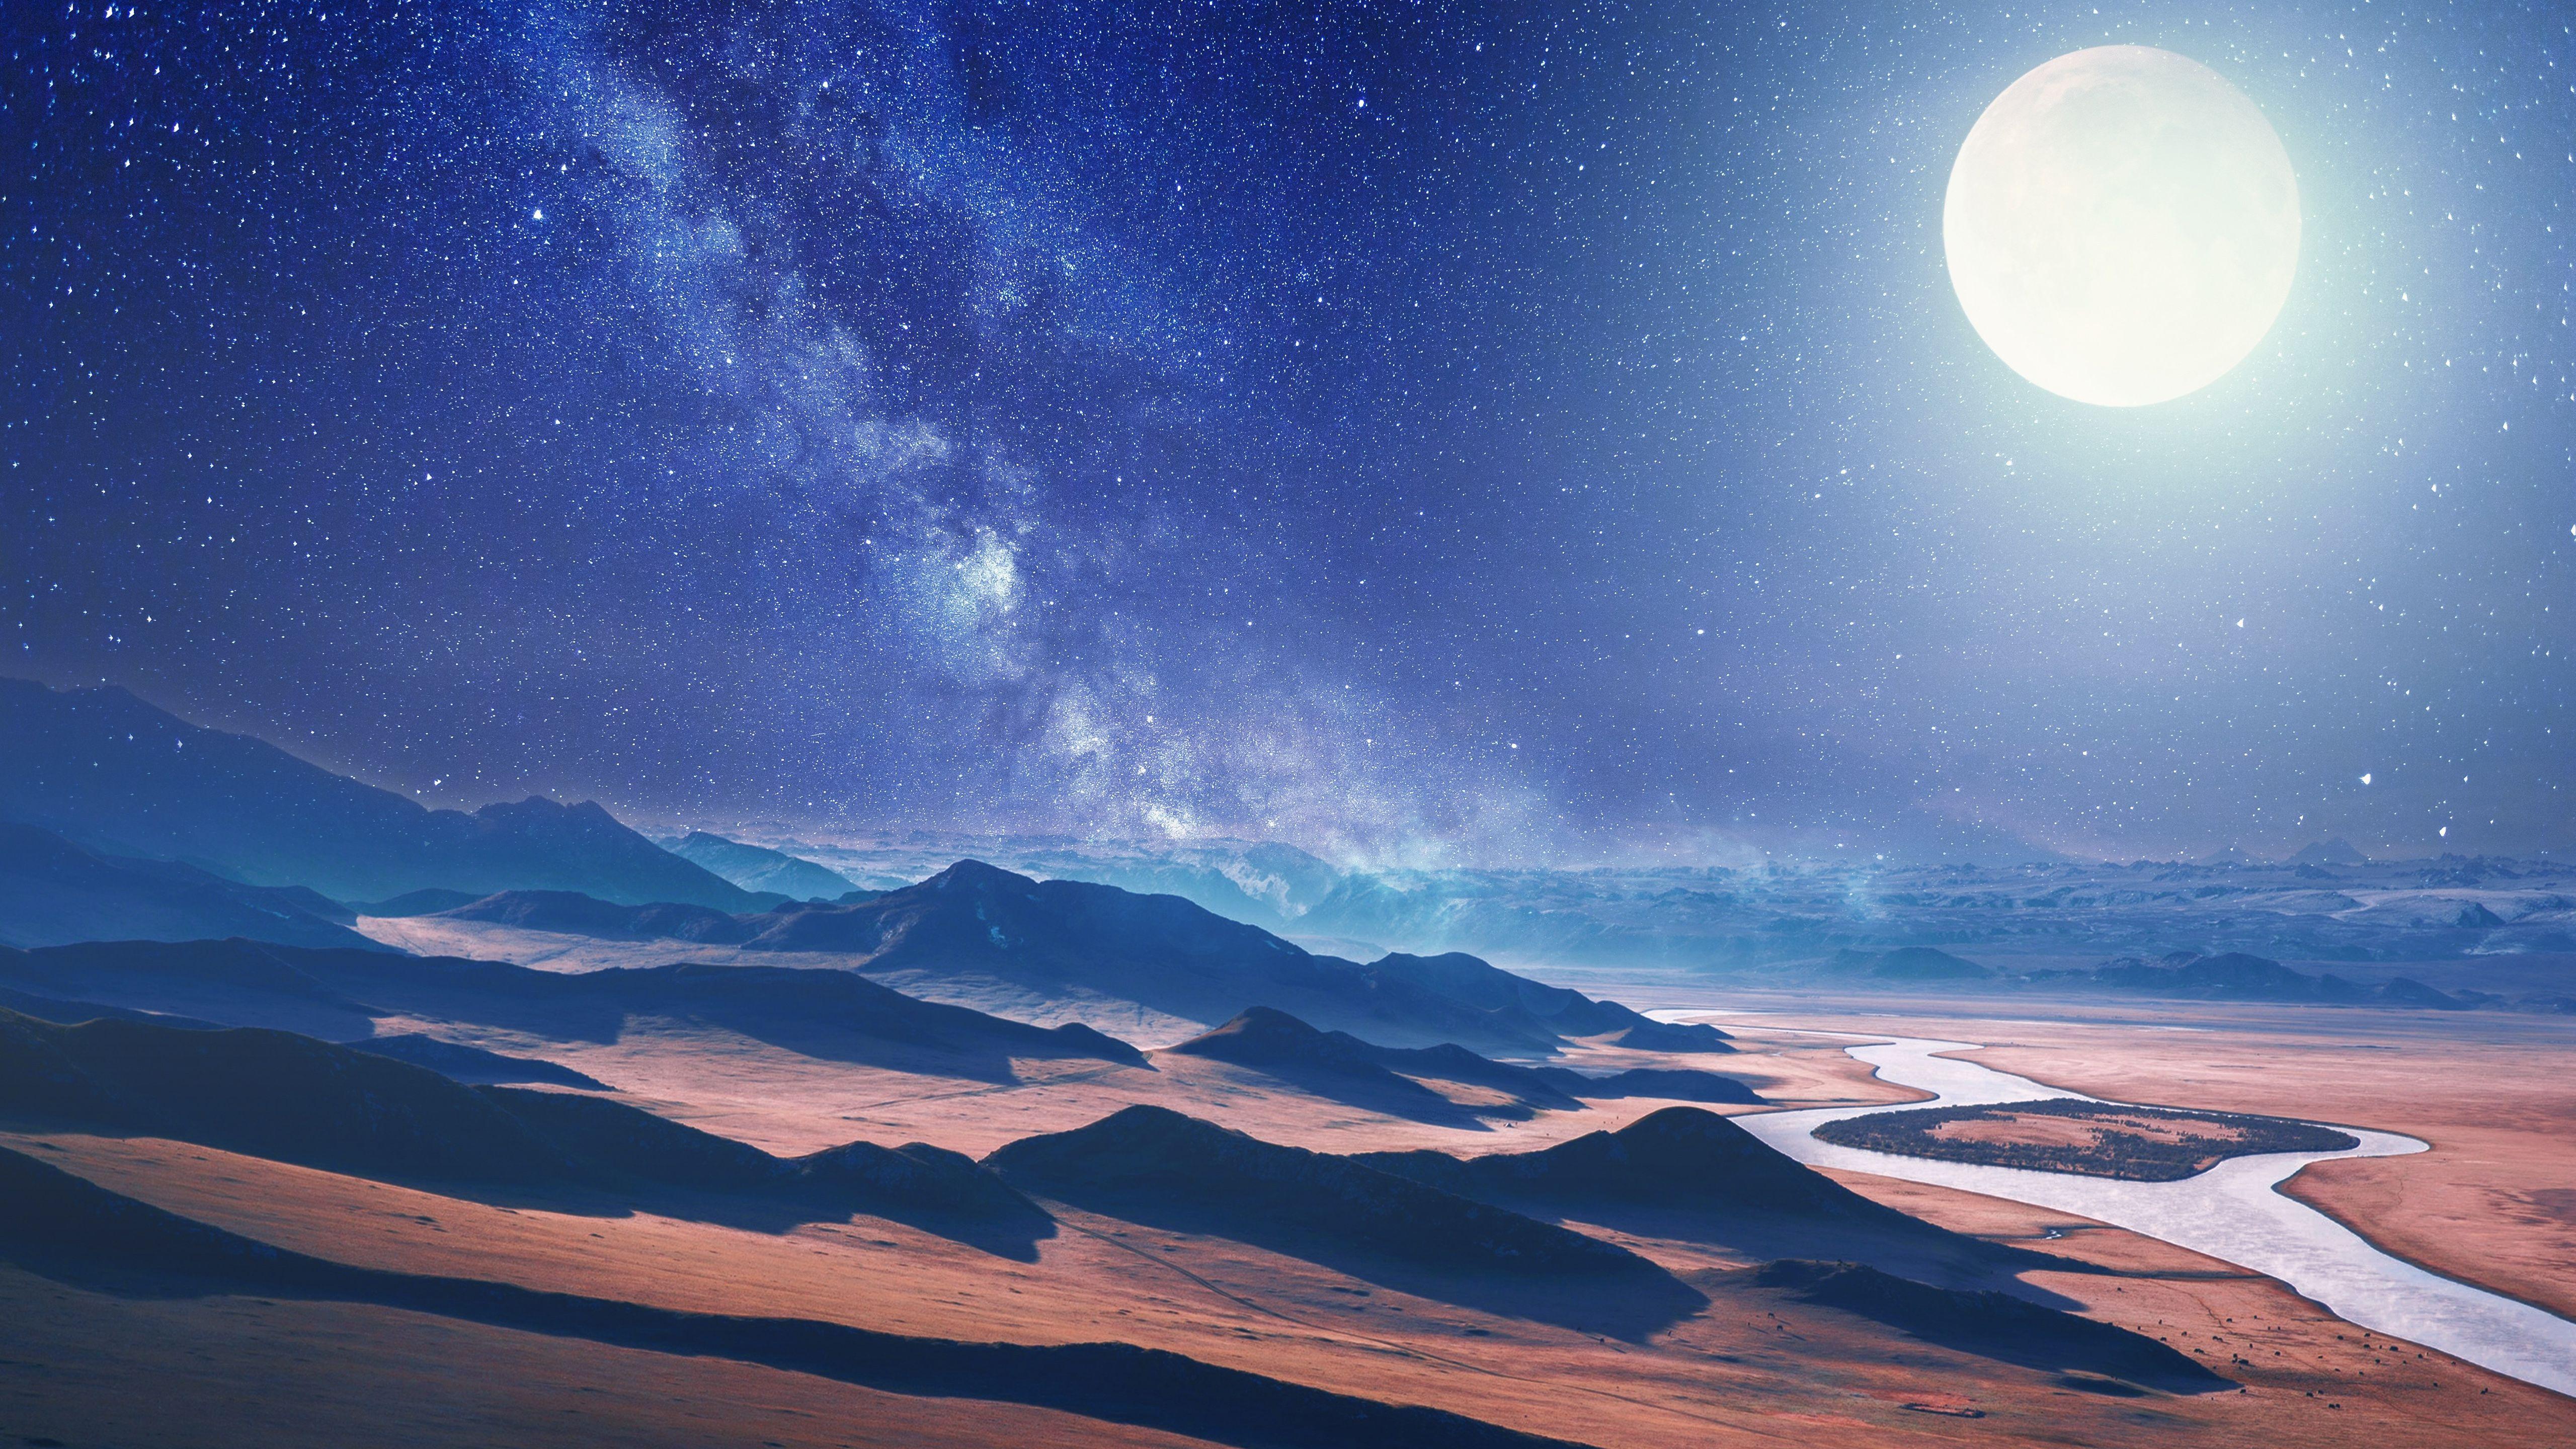 Desert Night 4K Wallpapers - Top Free Desert Night 4K Backgrounds